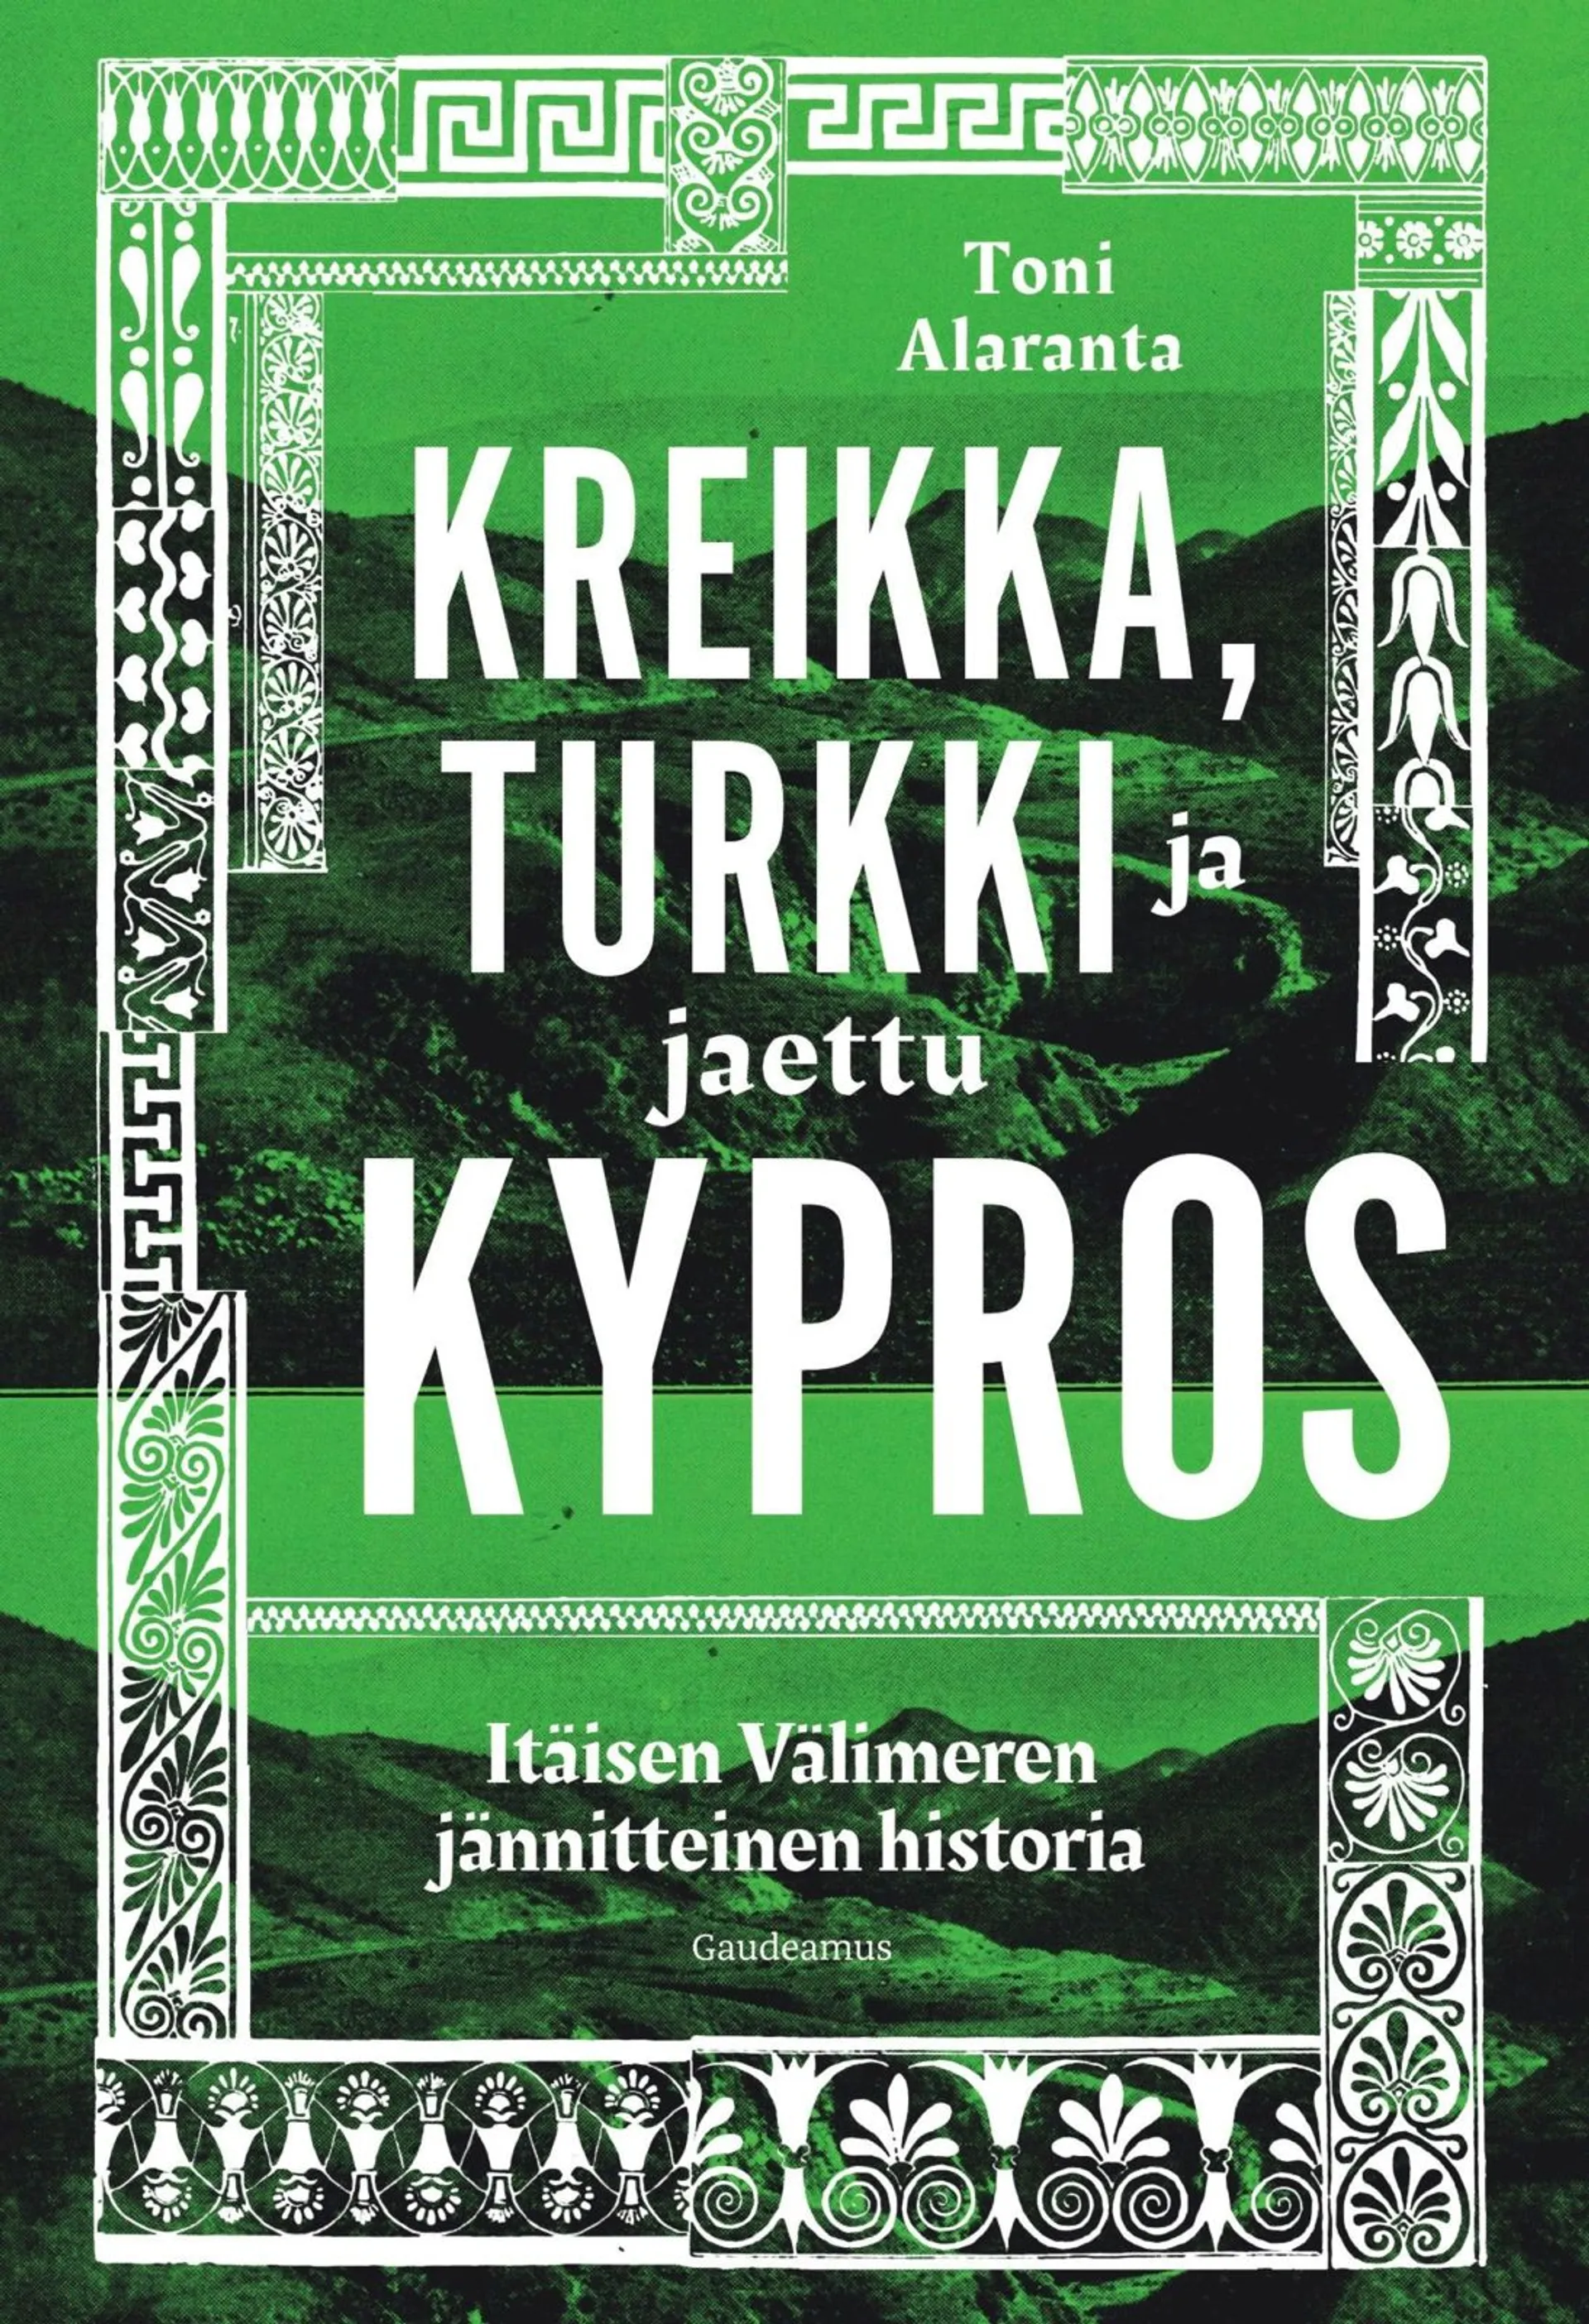 Alaranta, Kreikka, Turkki ja jaettu Kypros - Itäisen Välimeren jännitteinen historia